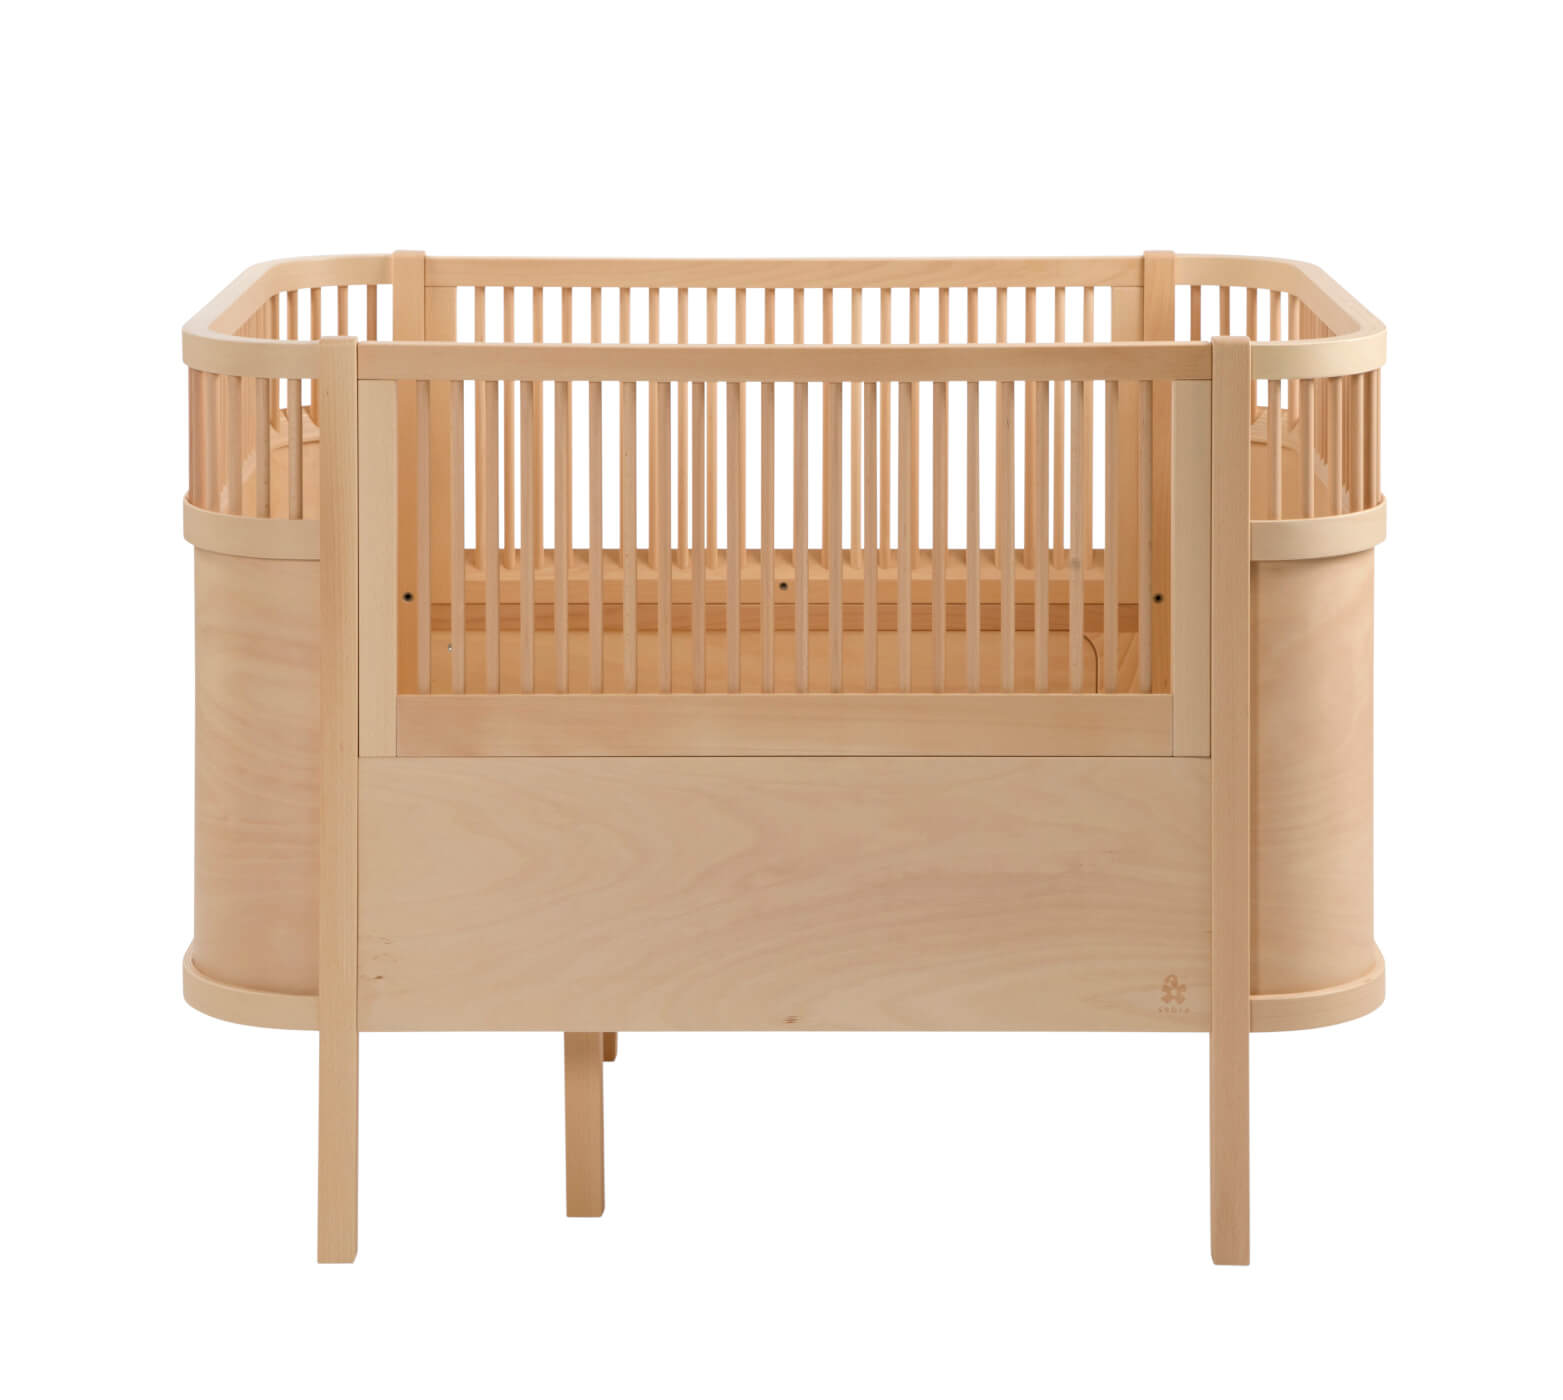 Sebra Das Sebra Bett Baby Junior Buchenholz 2001314 Design Möbel